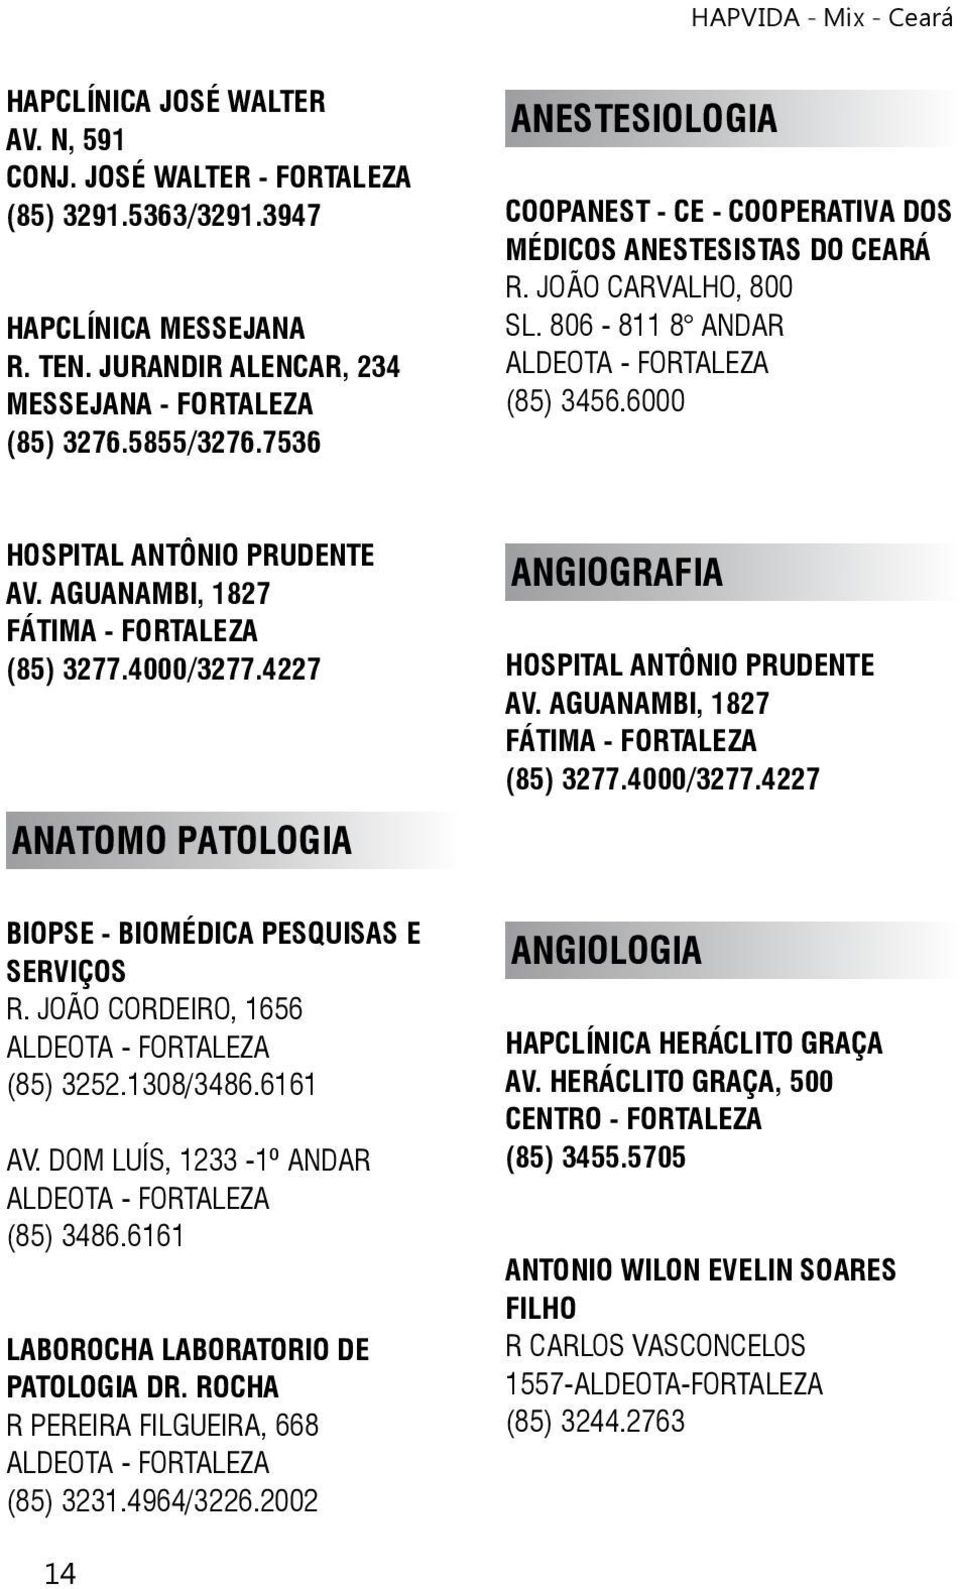 4000/3277.4227 ANATOMO PATOLOGIA ANGIOGRAFIA HOSPITAL ANTÔNIO PRUDENTE AV. AGUANAMBI, 1827 (85) 3277.4000/3277.4227 BIOPSE - BIOMÉDICA PESQUISAS E SERVIÇOS R. JOÃO CORDEIRO, 1656 (85) 3252.1308/3486.